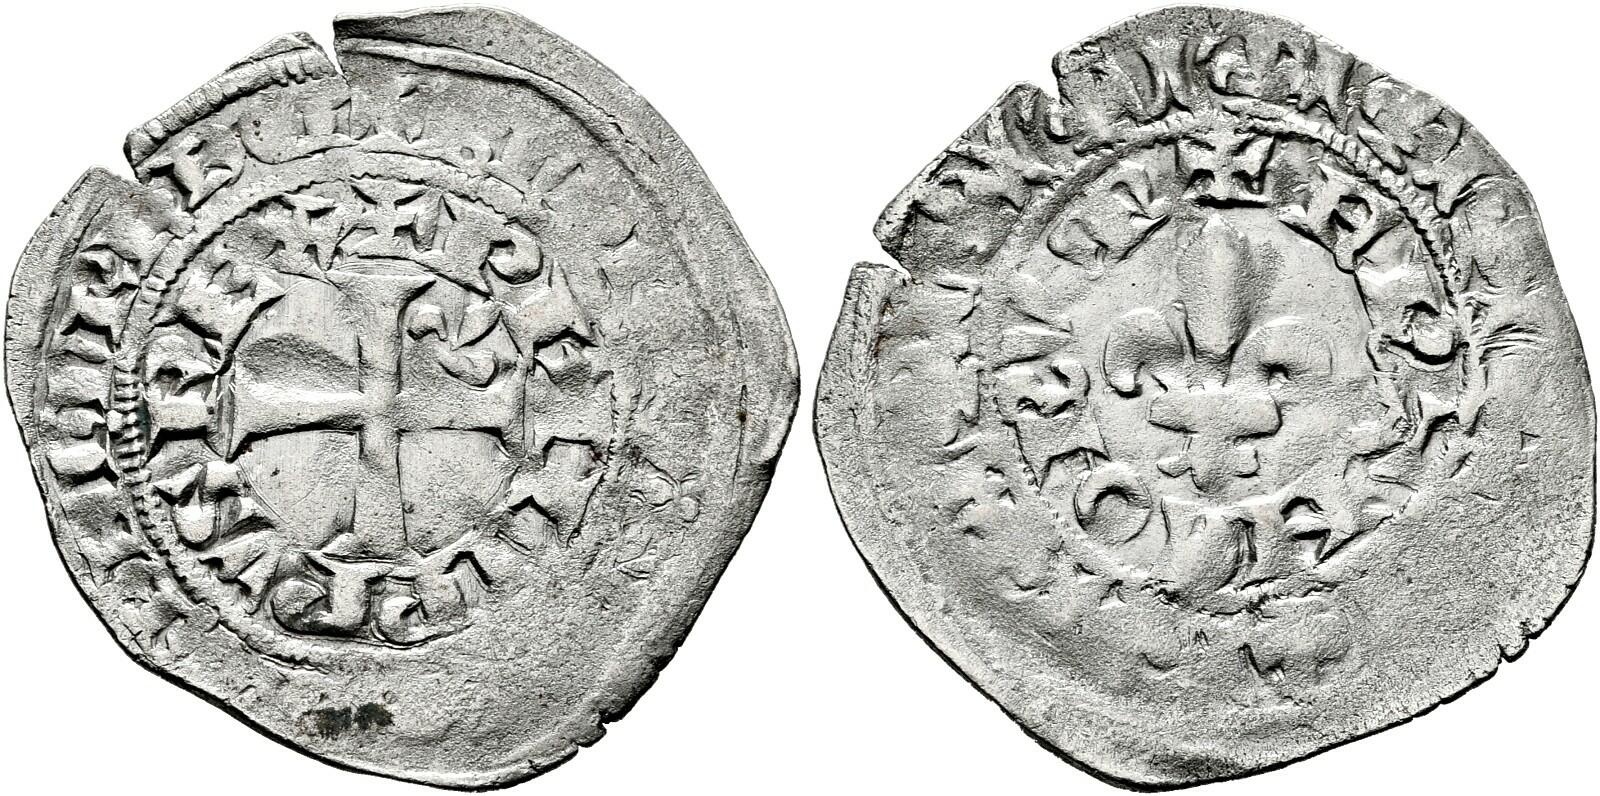 40.110.10.150: Europa - Frankreich - Königreich - Philipp VI., 1328 - 1350